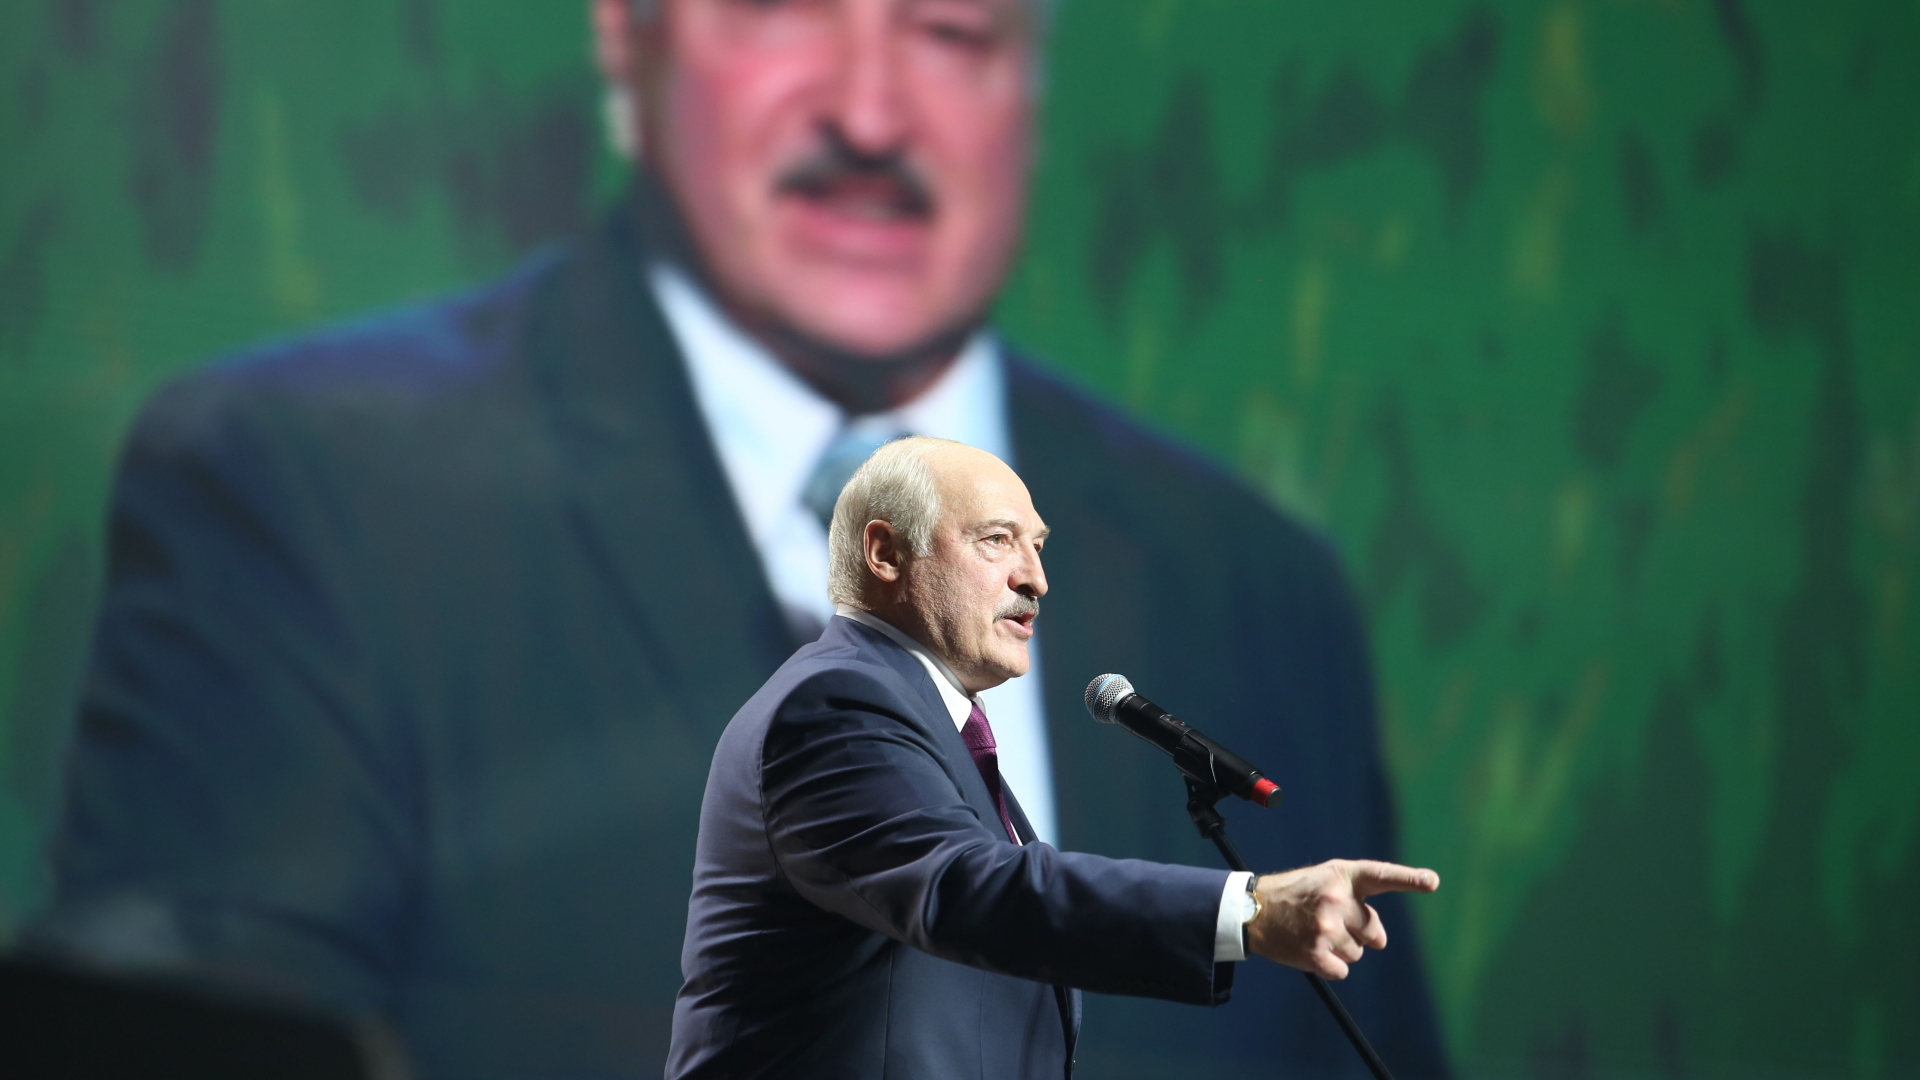 Belarus' Präsident Lukaschenk spricht auf einer Veranstaltung im September 2020 in Minsk | AFP